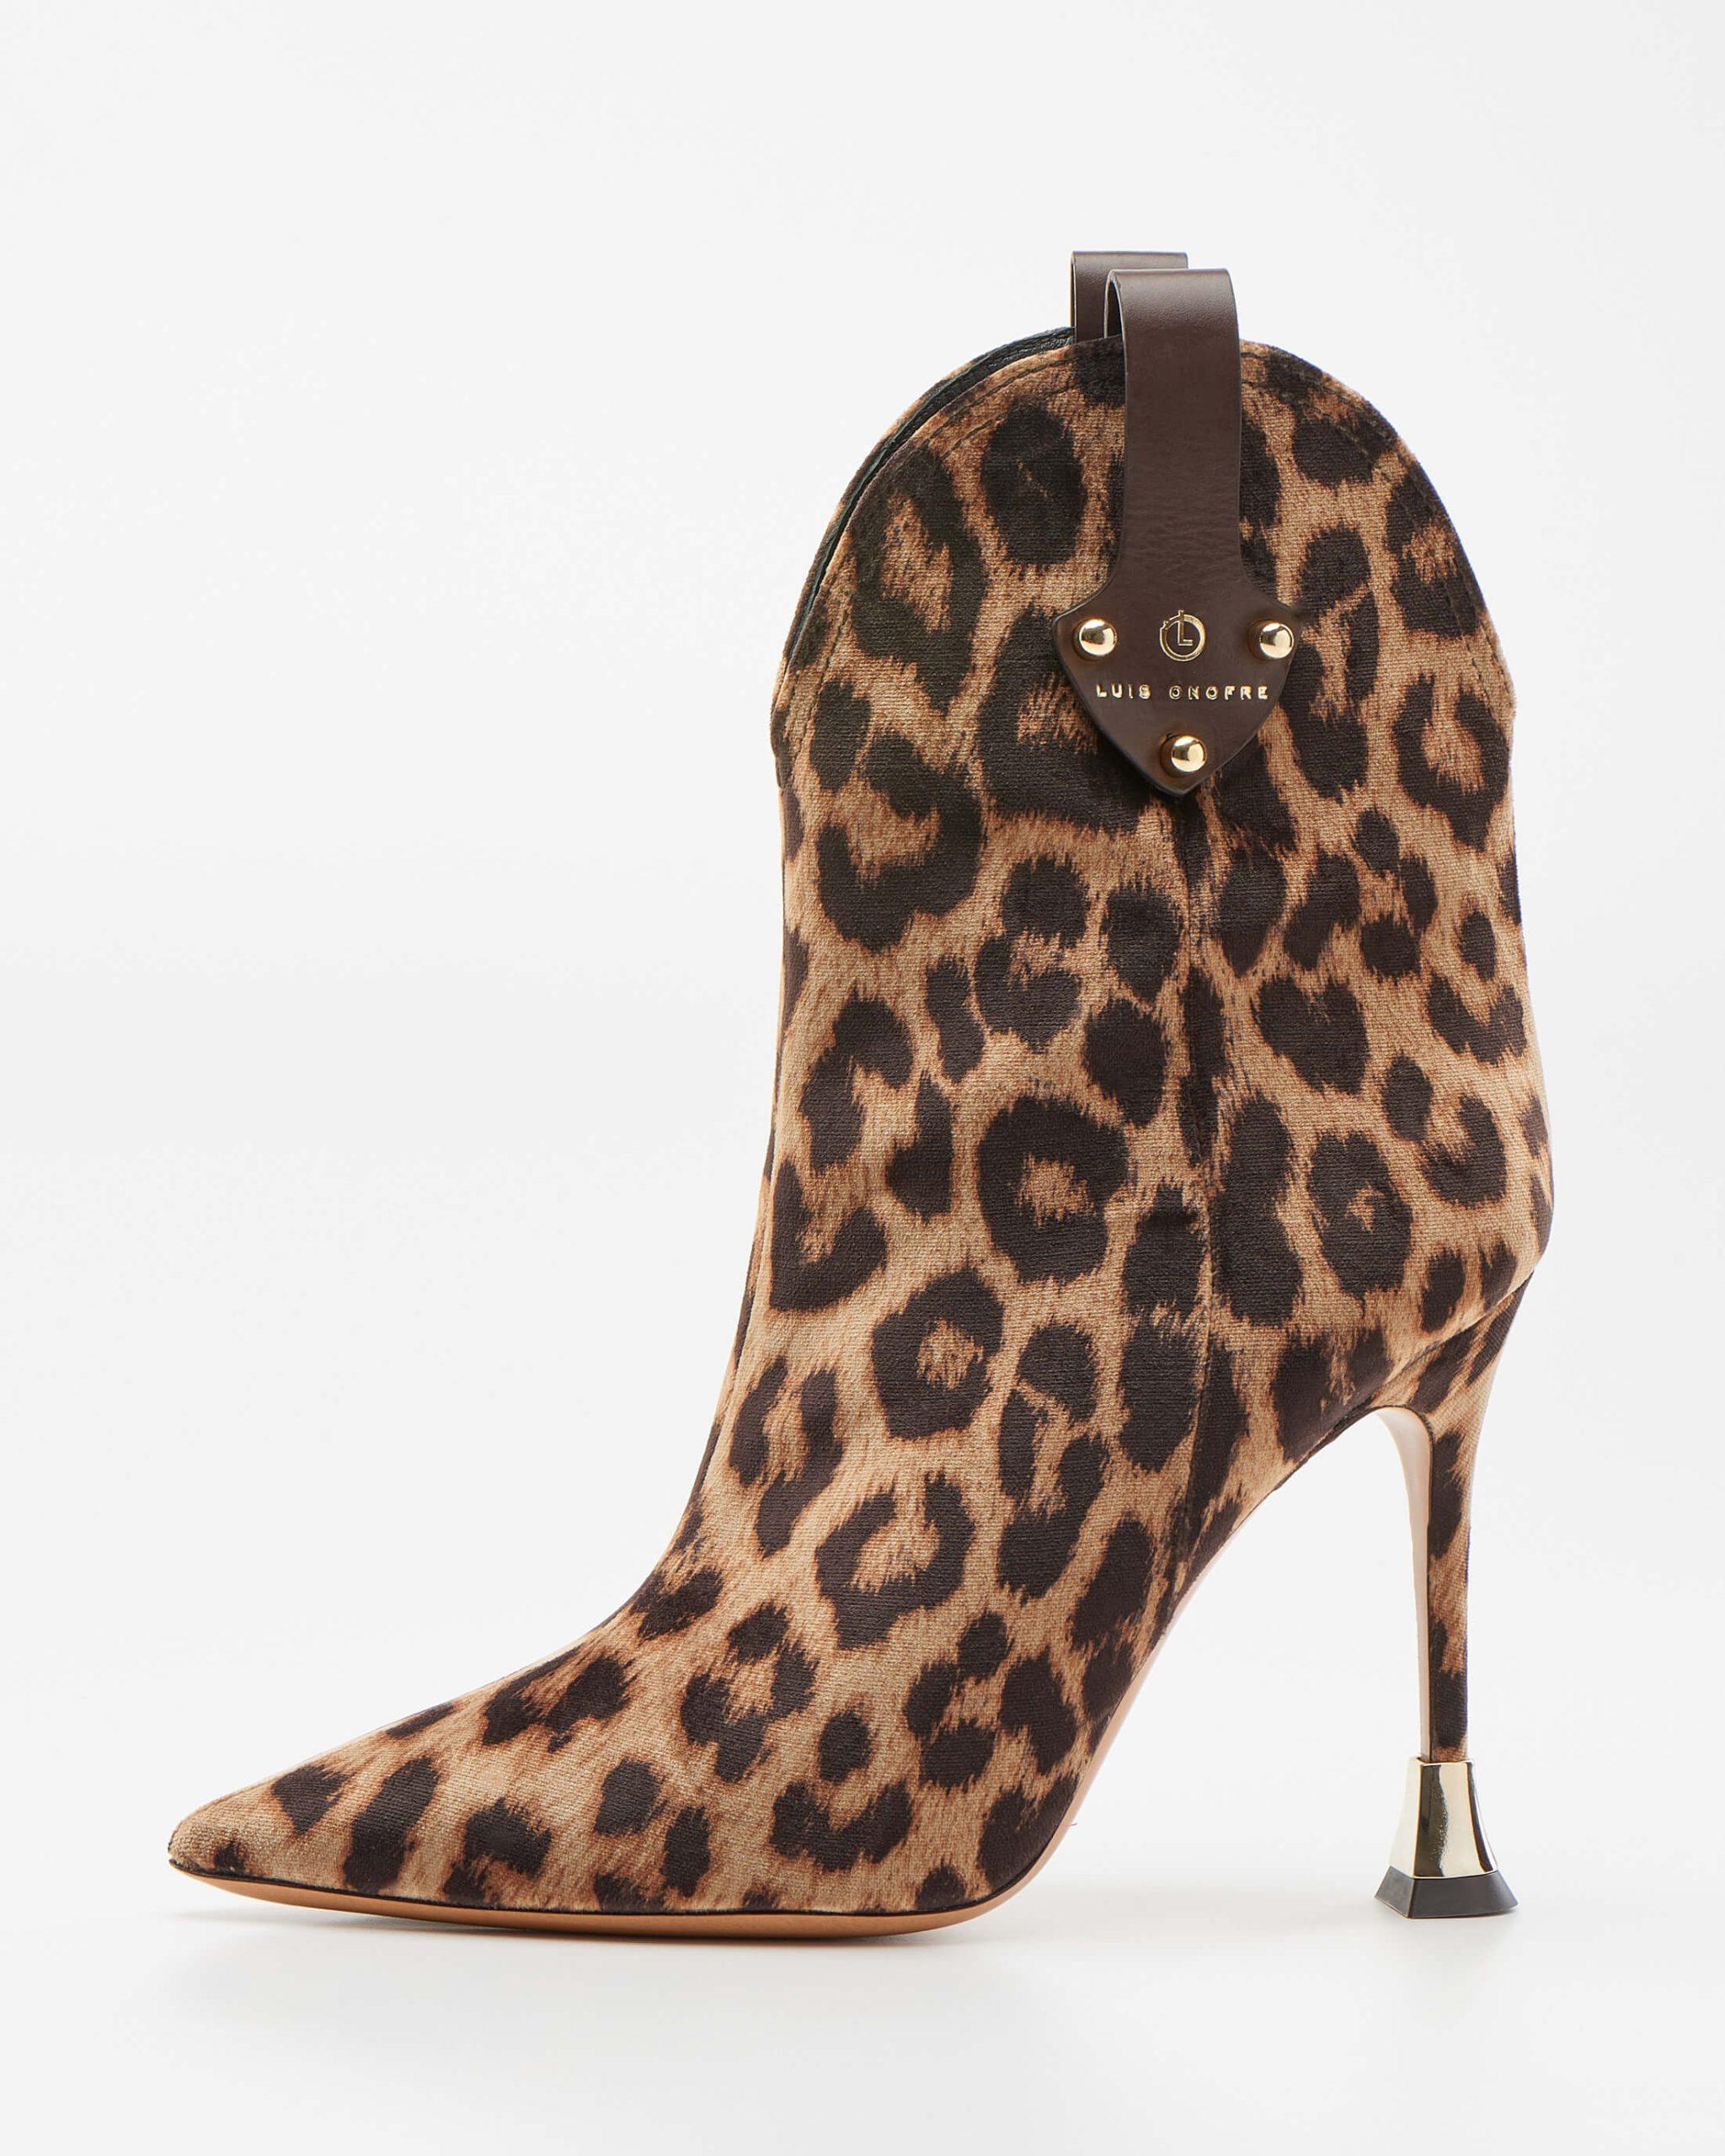 Leopard-print ankle Boots Shoes Design - Portuguese - Onofre Luis